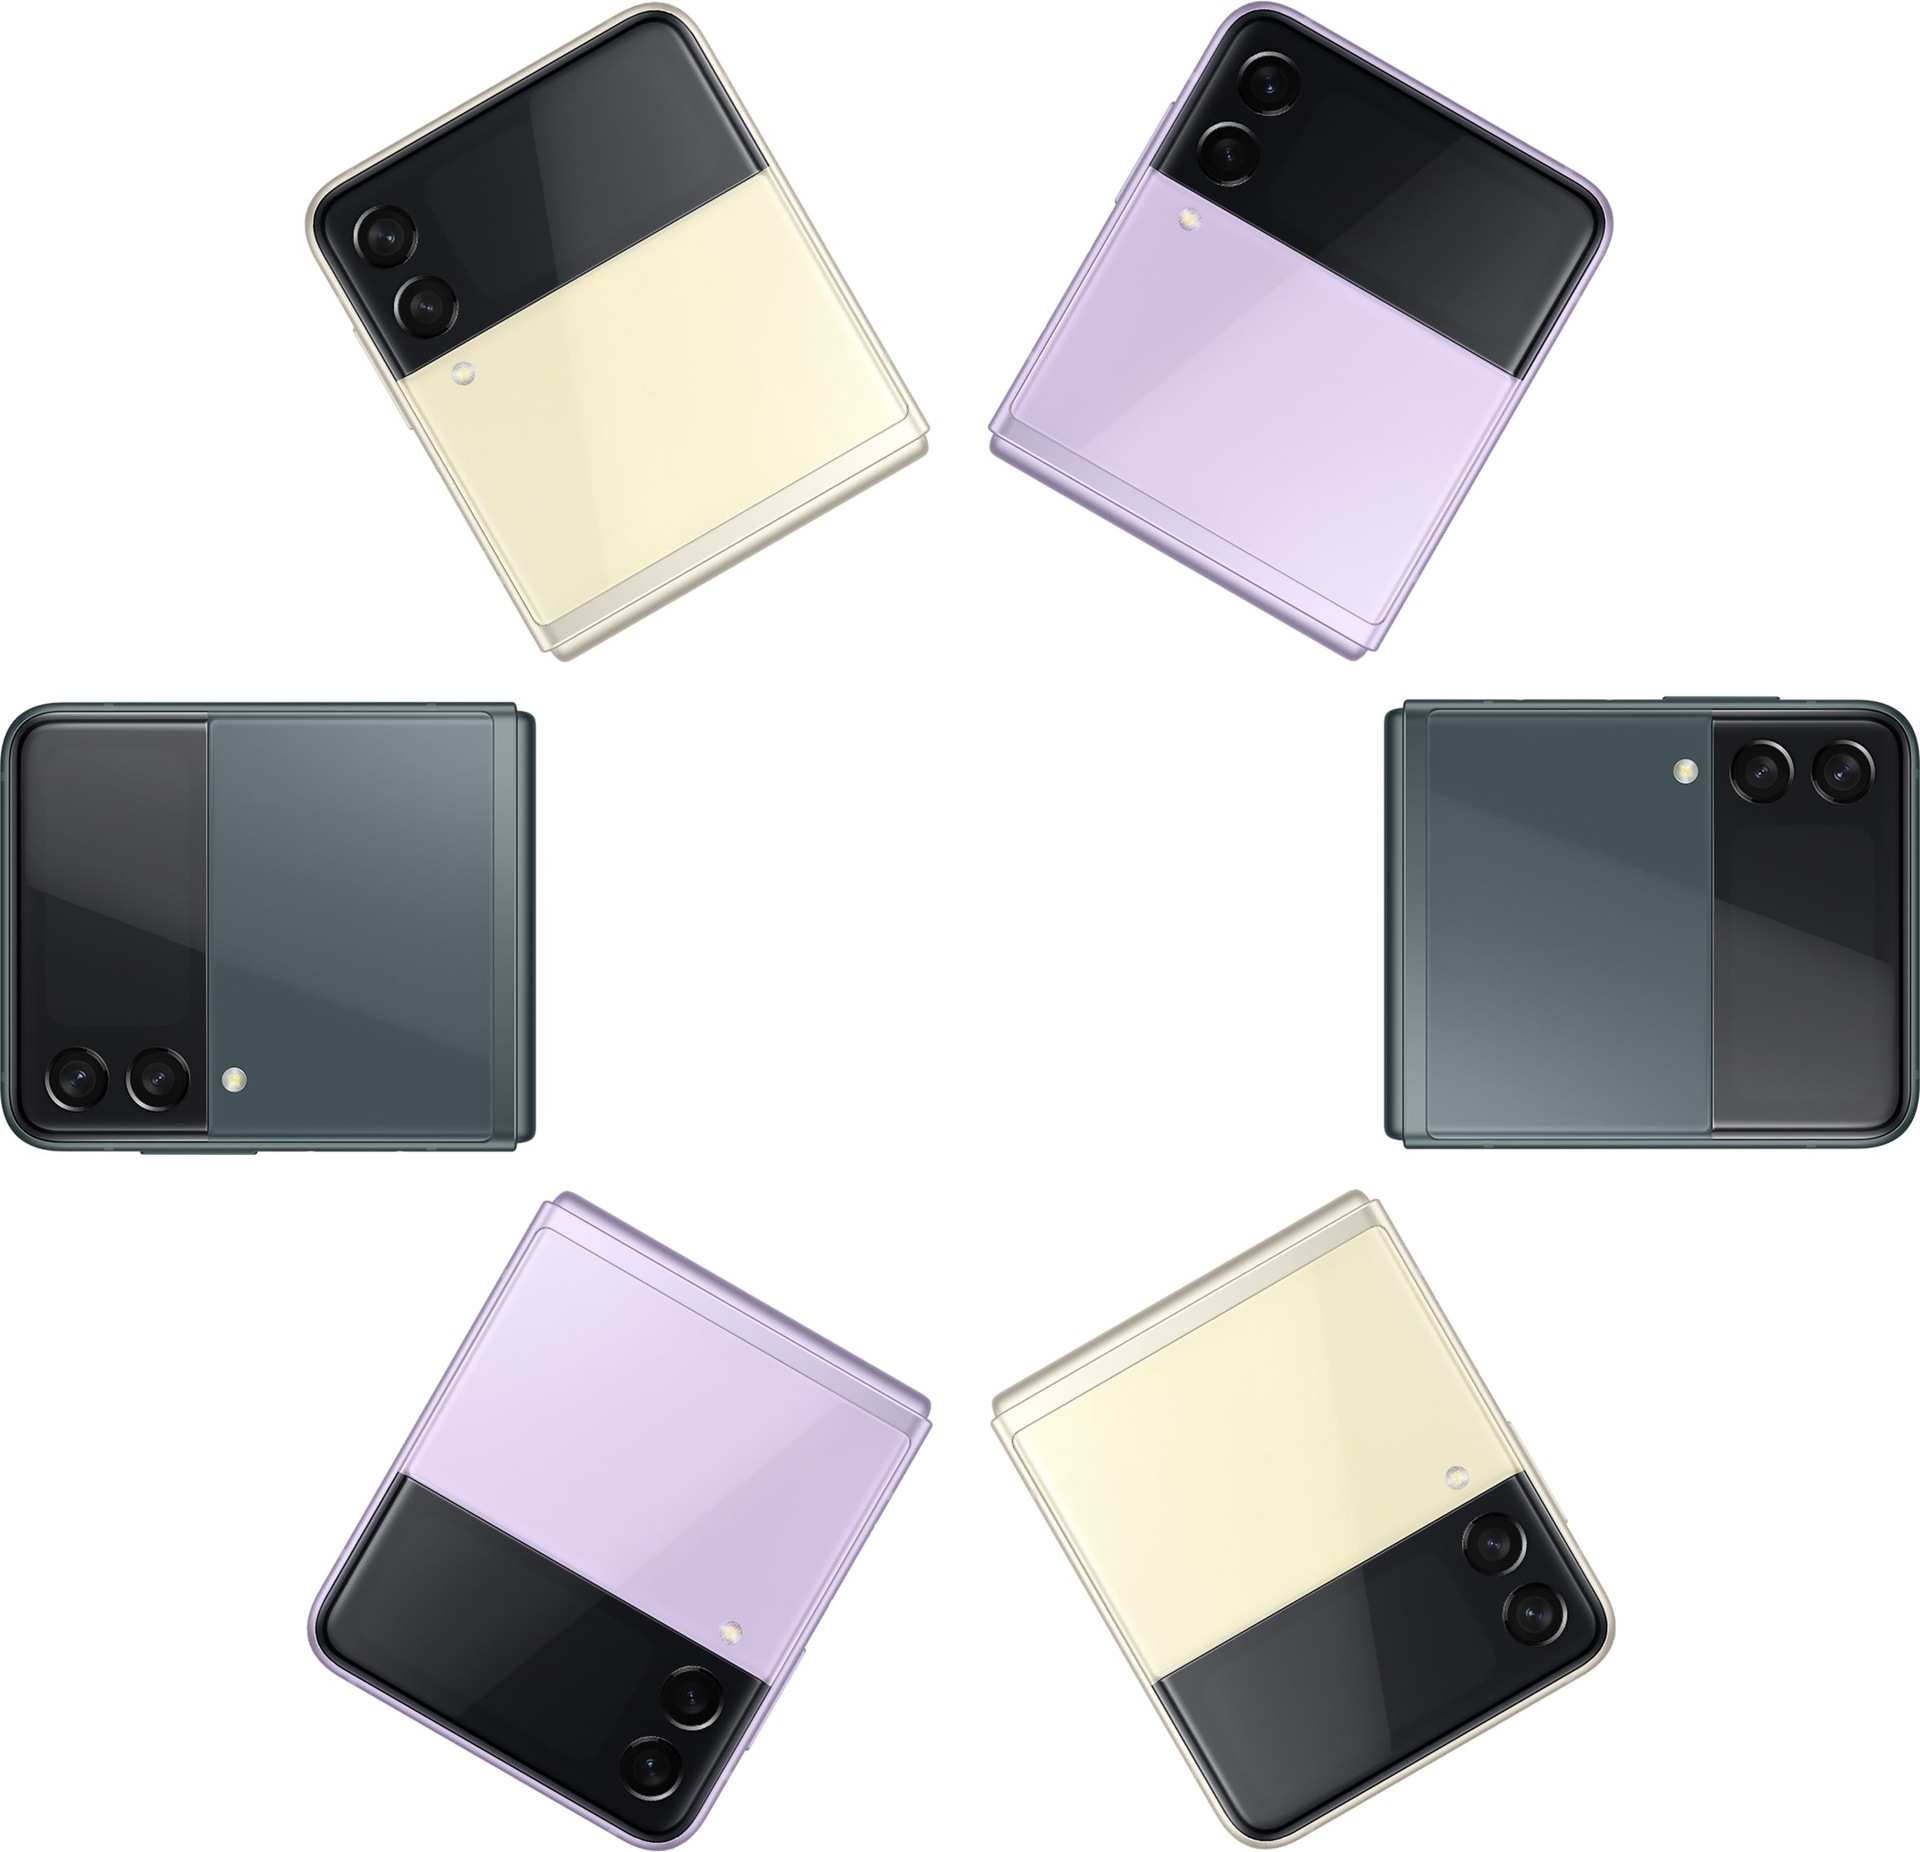 Sechs zusammengeklappte Galaxy Z Flip3 5G Smartphones von vorne gesehen, die jeweils abwechselnd in den Farben Creme, Lavender und Green zu sehen sind. 